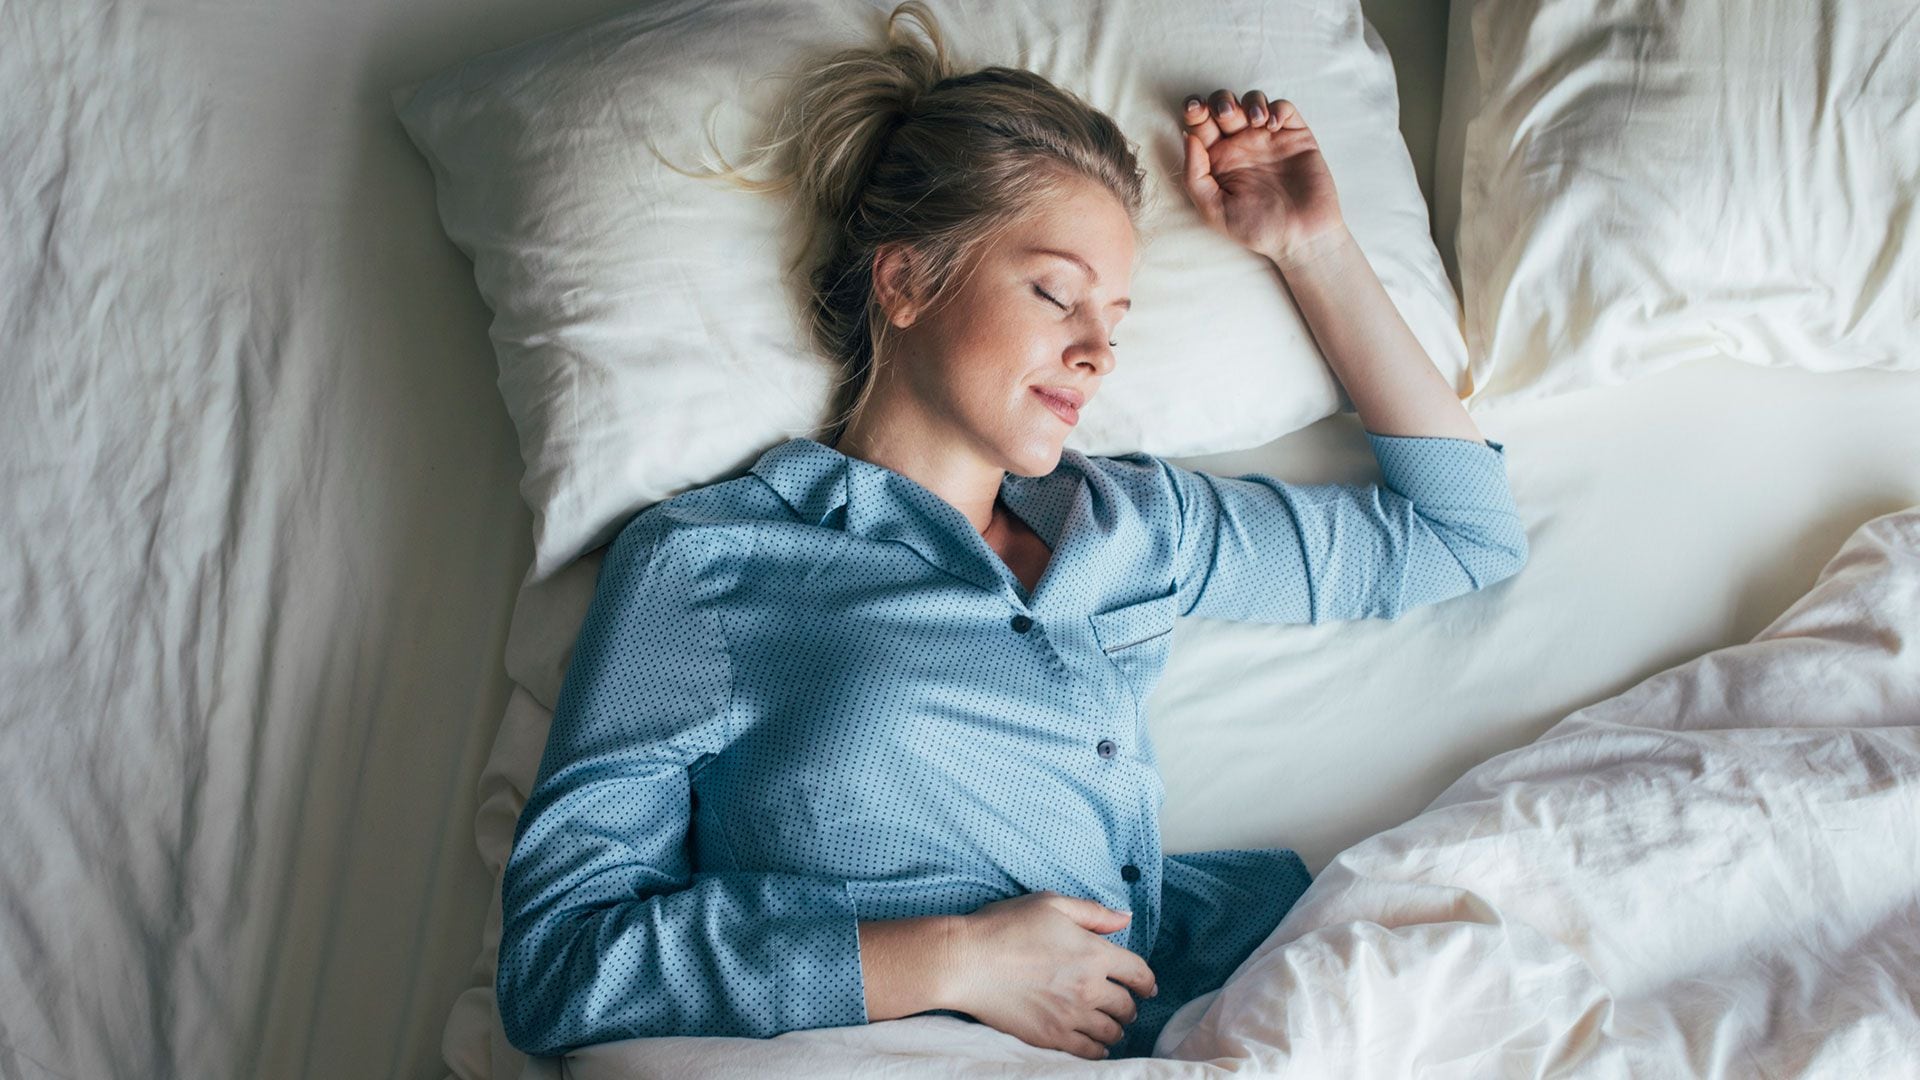 Las apneas de sueño dificultan el buen descanso (Getty)